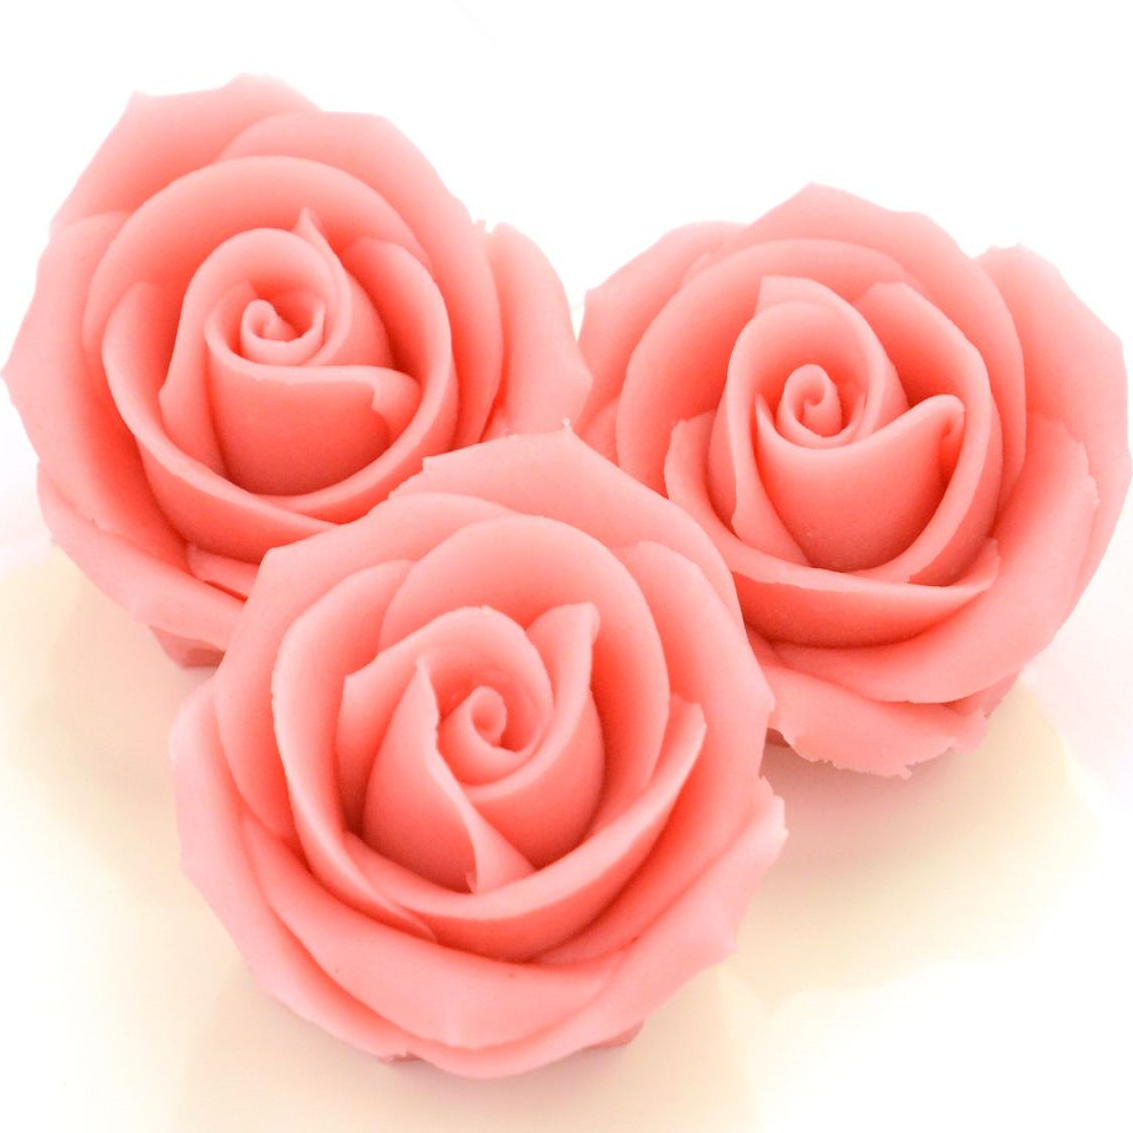 Marzipan-Rosen groß rosa 2 Stück MHD März 24